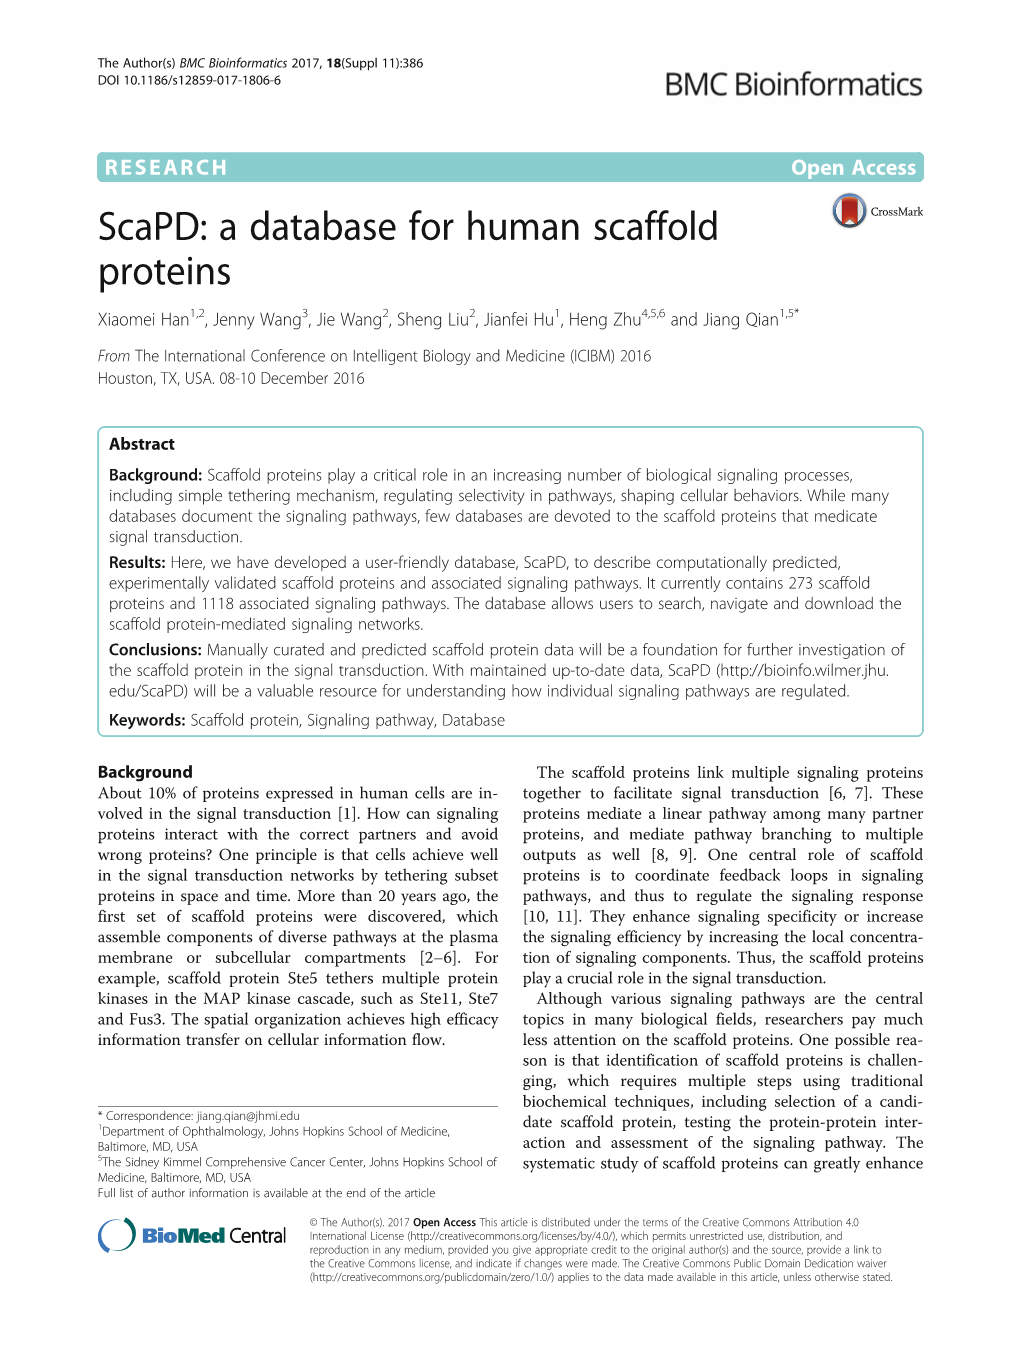 Scapd: a Database for Human Scaffold Proteins Xiaomei Han1,2, Jenny Wang3, Jie Wang2, Sheng Liu2, Jianfei Hu1, Heng Zhu4,5,6 and Jiang Qian1,5*